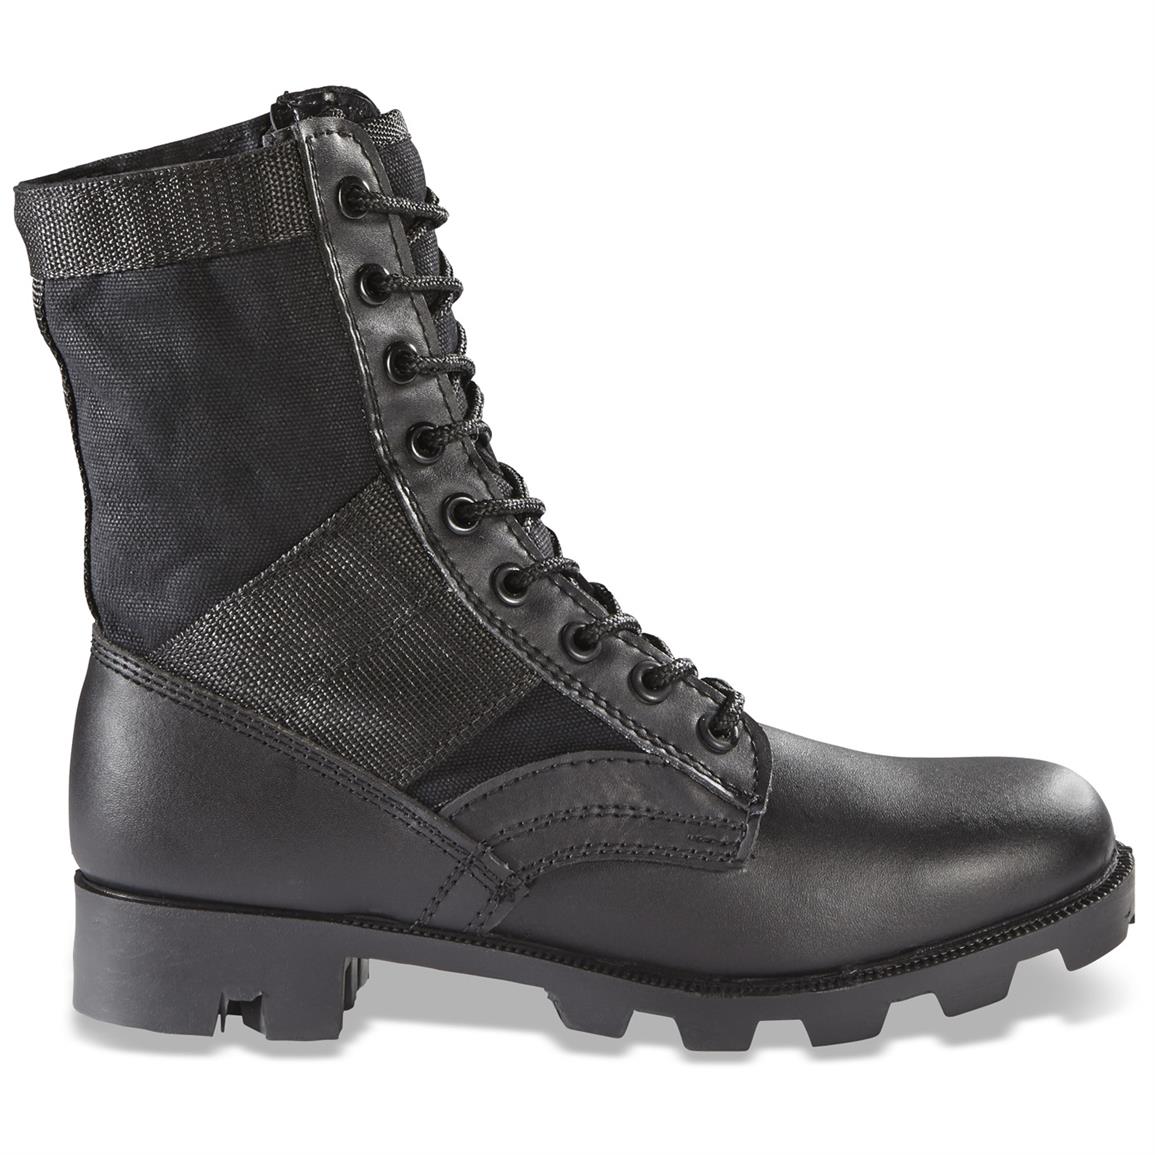 Military-Spec Men's Jungle Boots - 161986, Combat & Tactical Boots ...